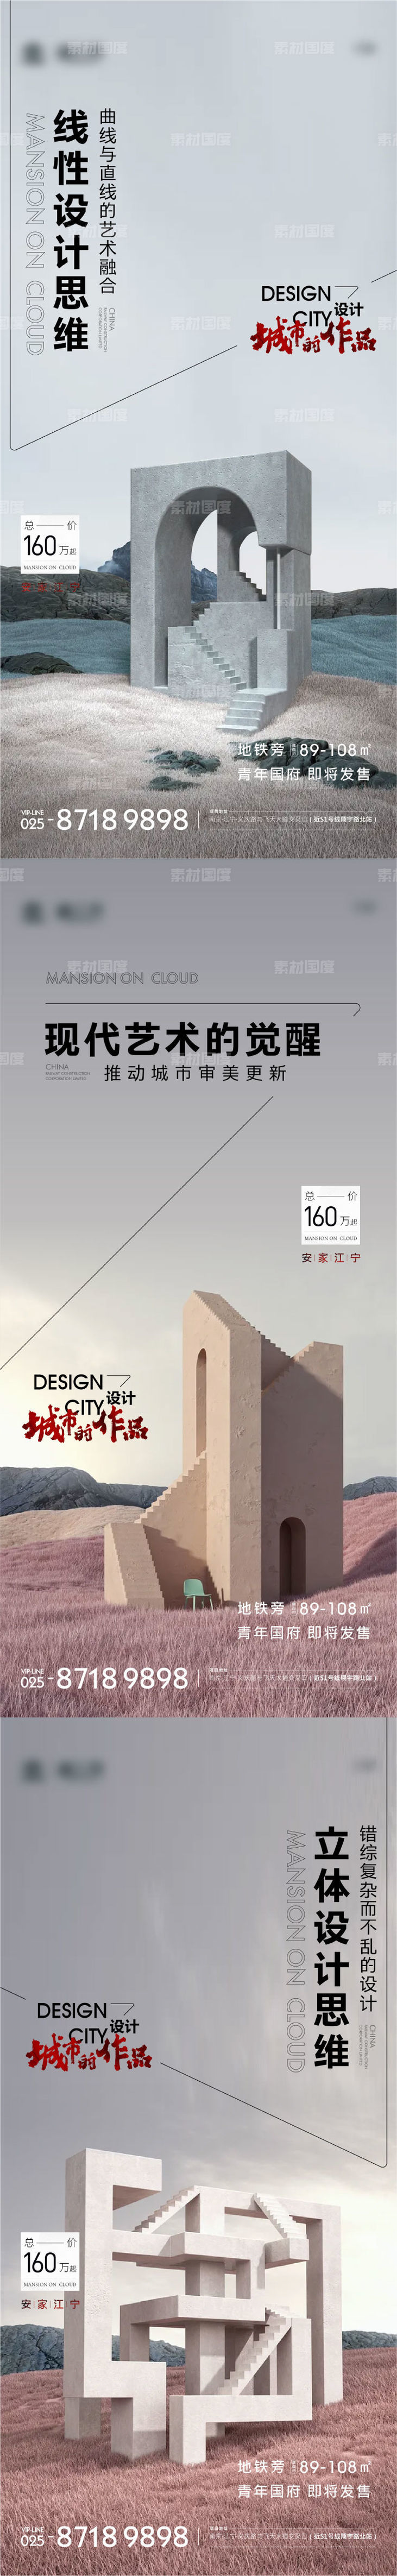 地产建筑美学价值点系列海报